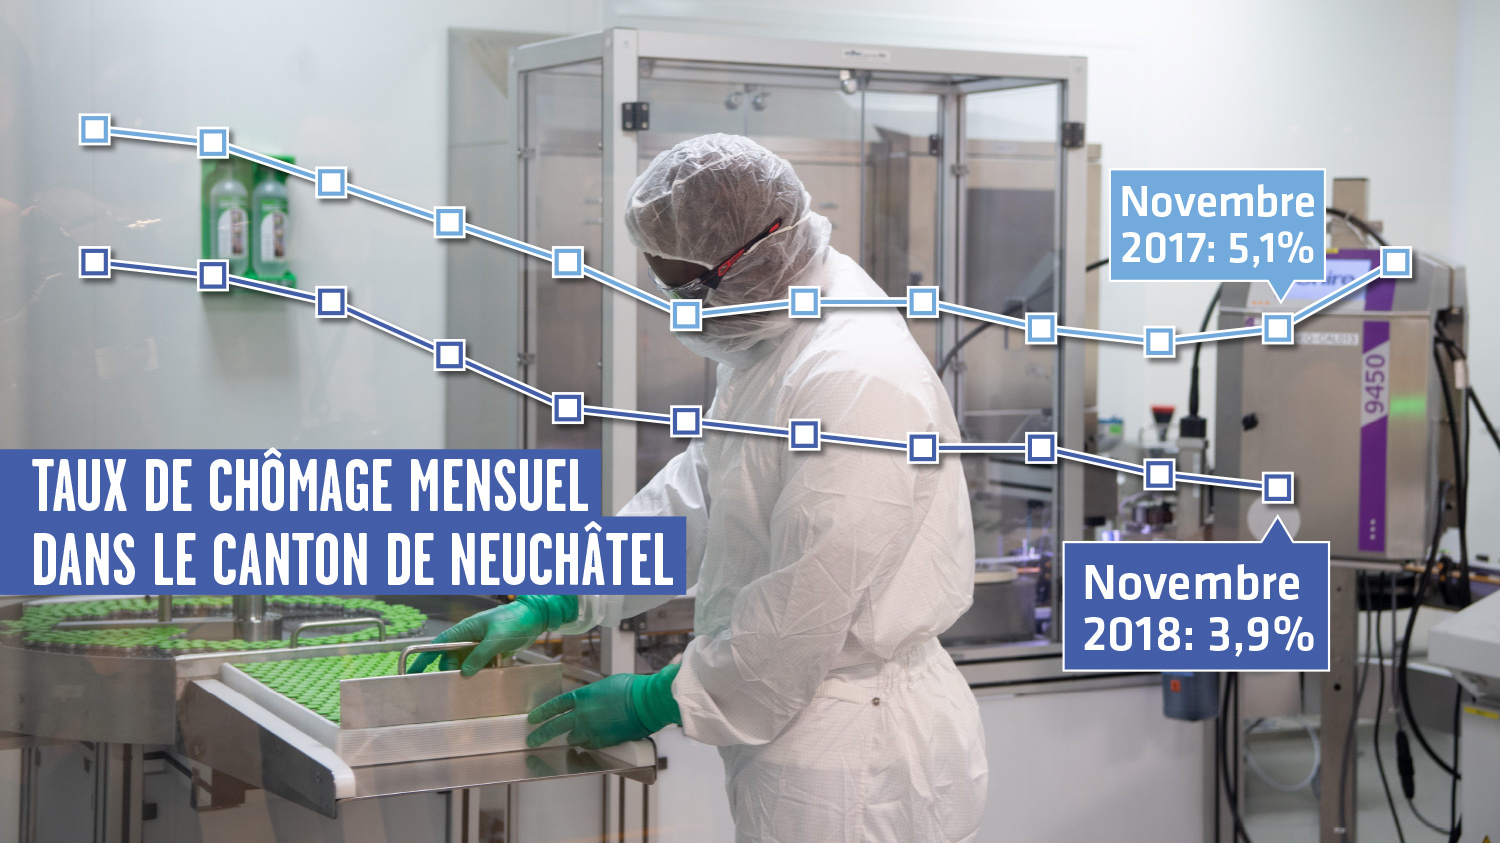 Au mois de novembre, le taux de chômage s’est établi à 3,9% dans le canton de Neuchâtel.